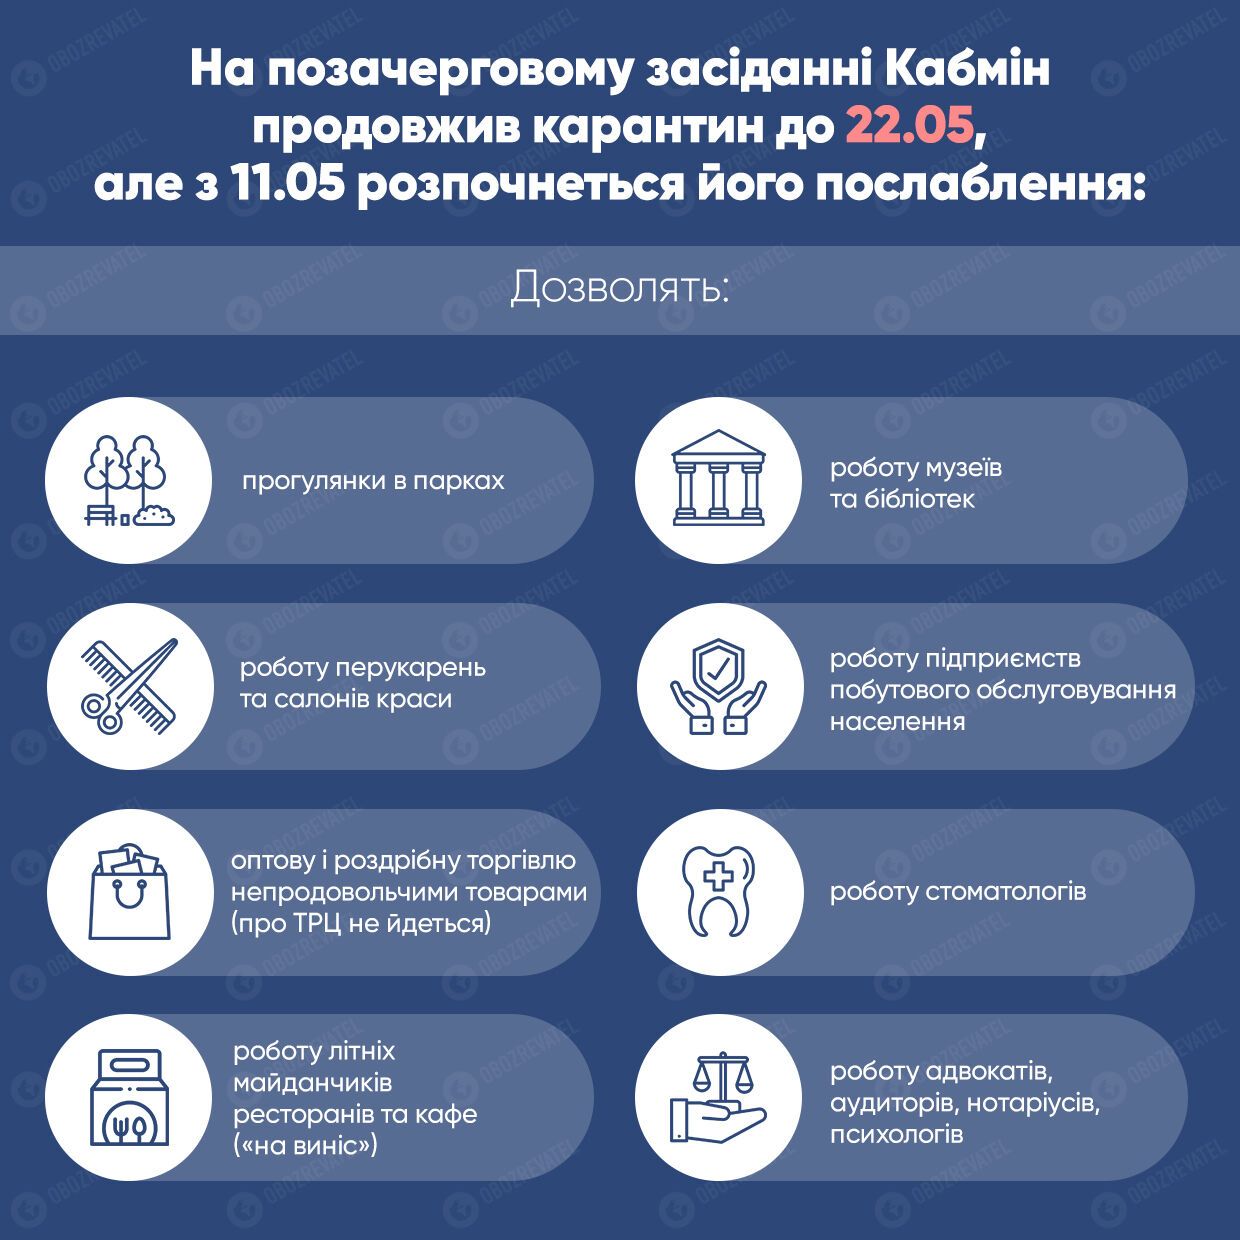 Ослаблення карантину в Україні: МОЗ пояснило, що залишається під забороною